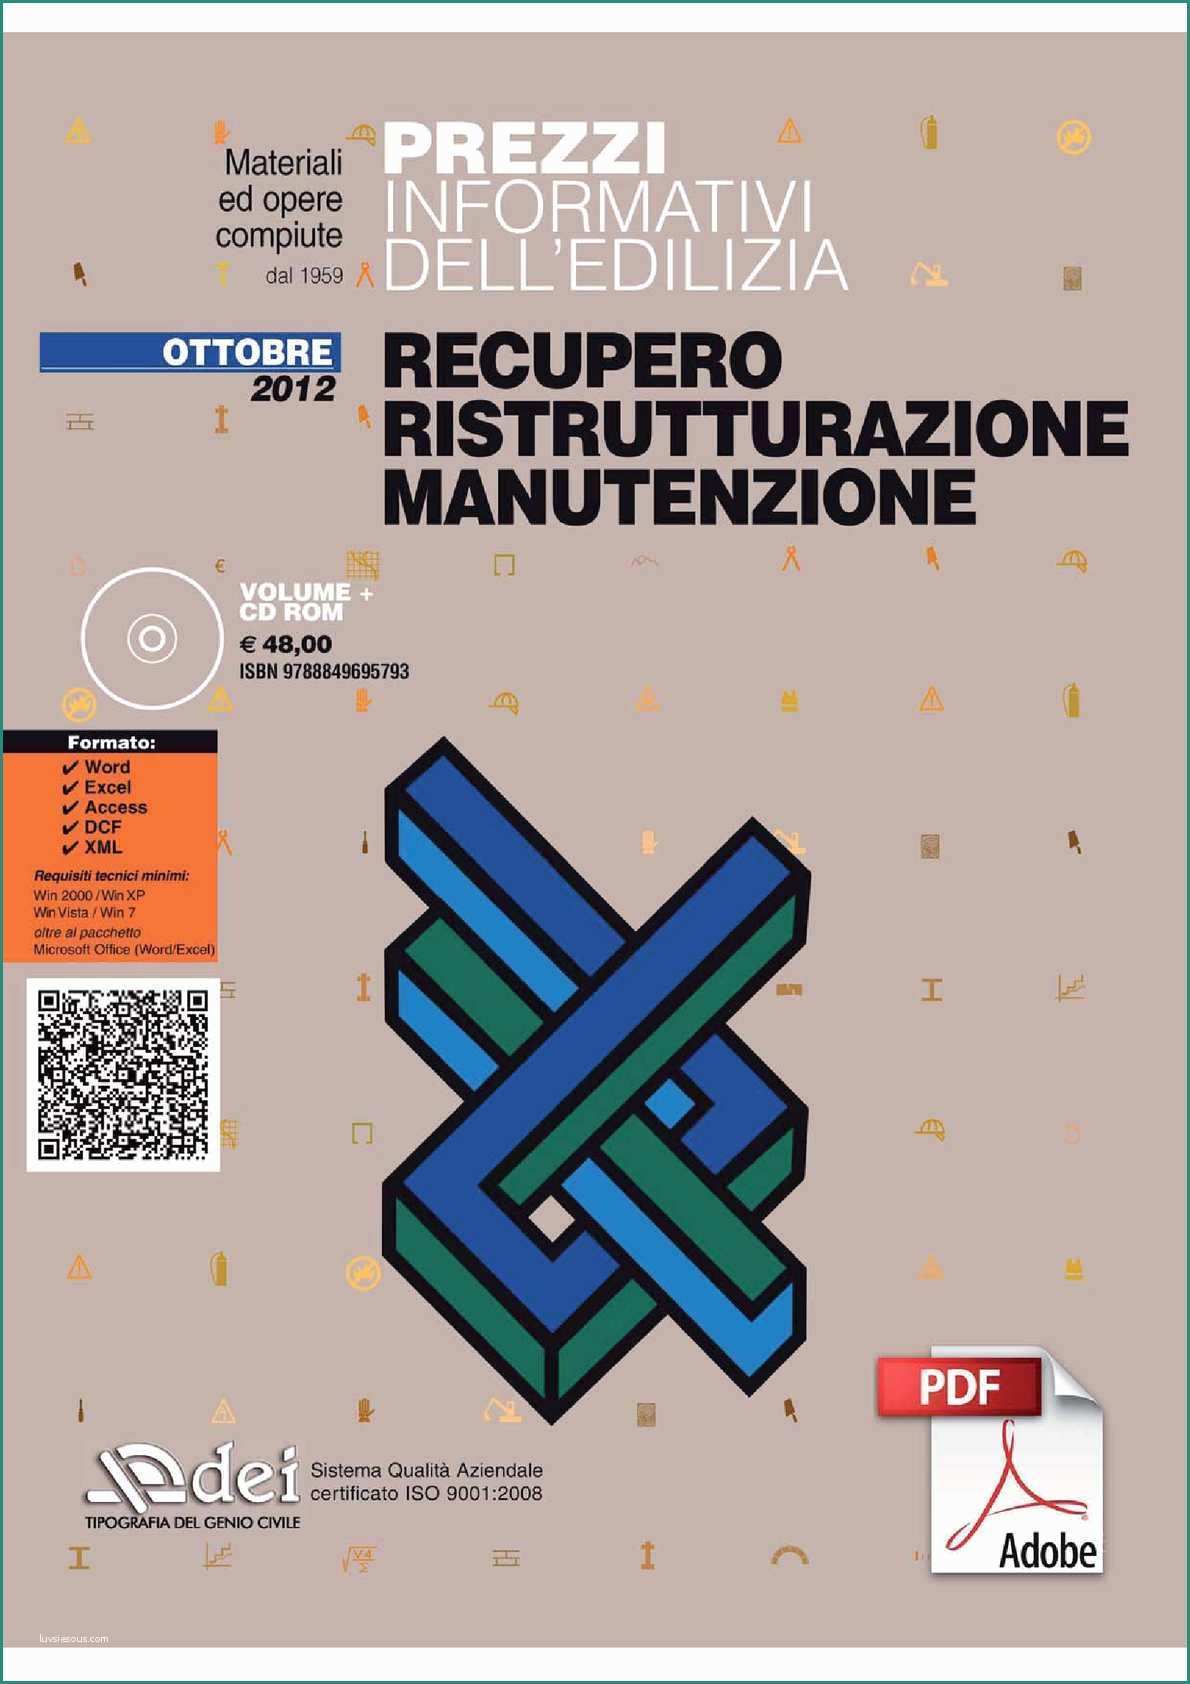 Prezzi Pannelli isolanti Per Tetti E Calaméo Prezzario Recupero Ristrutturazione Manutenzione 2012